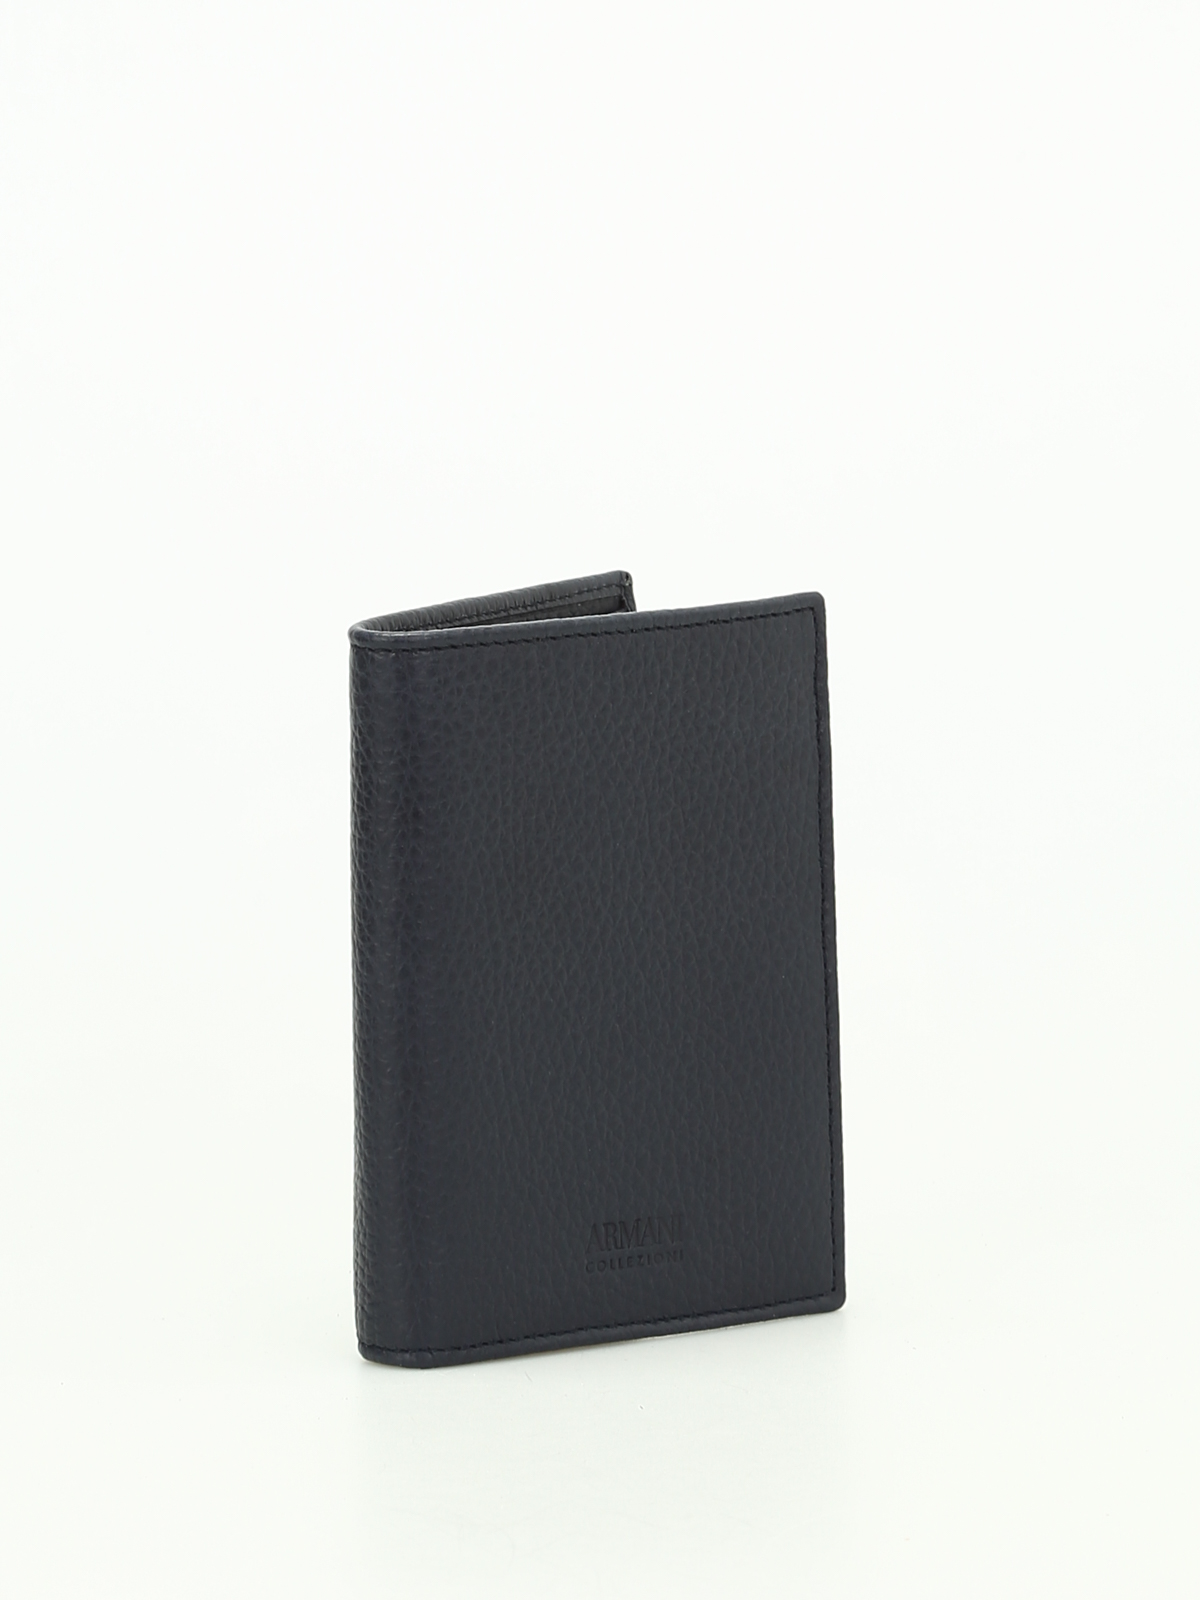 Hammered leather bi-fold wallet 